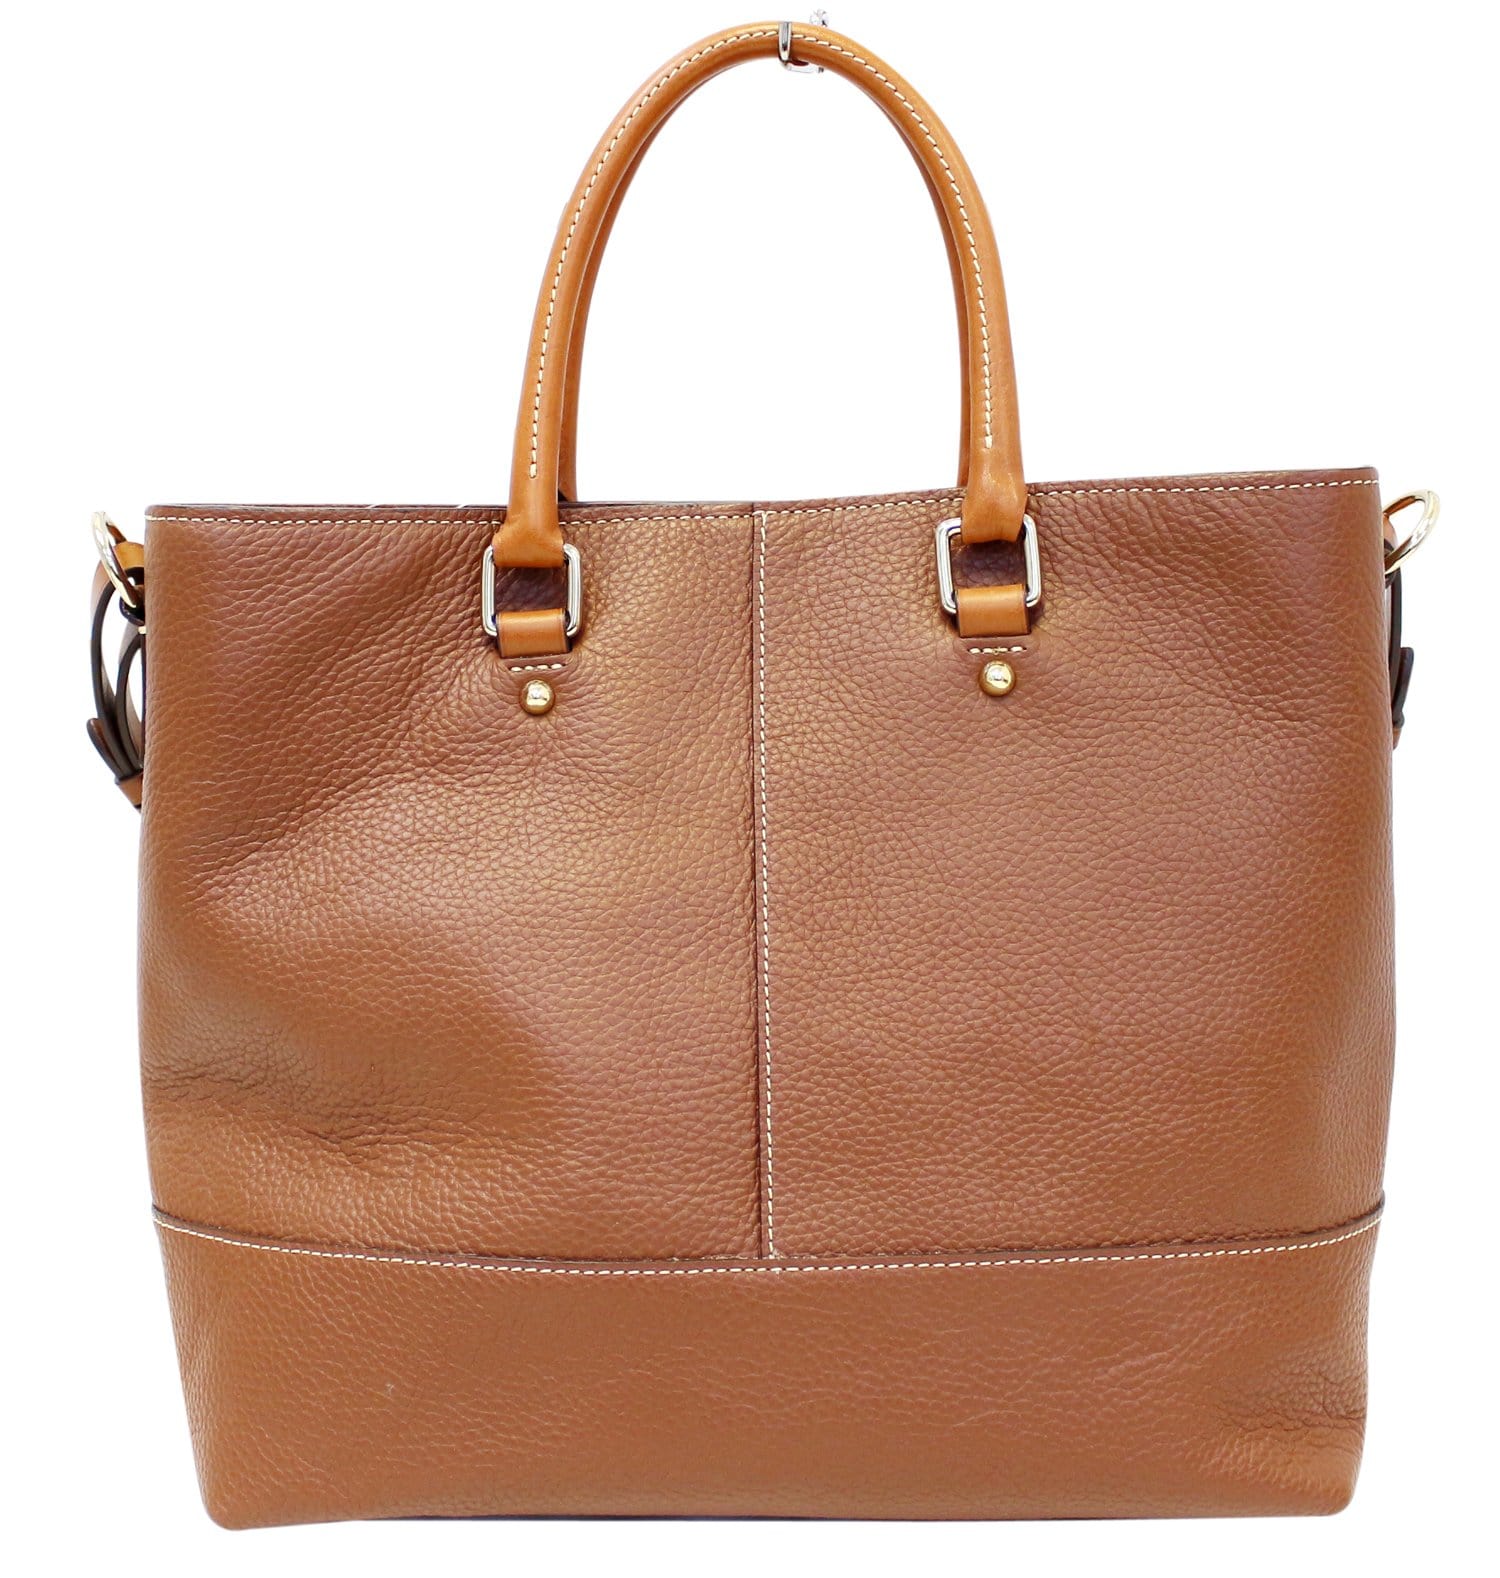 Dooney & Bourke, Bags, Brown Leather Dooney Bourke Handbag